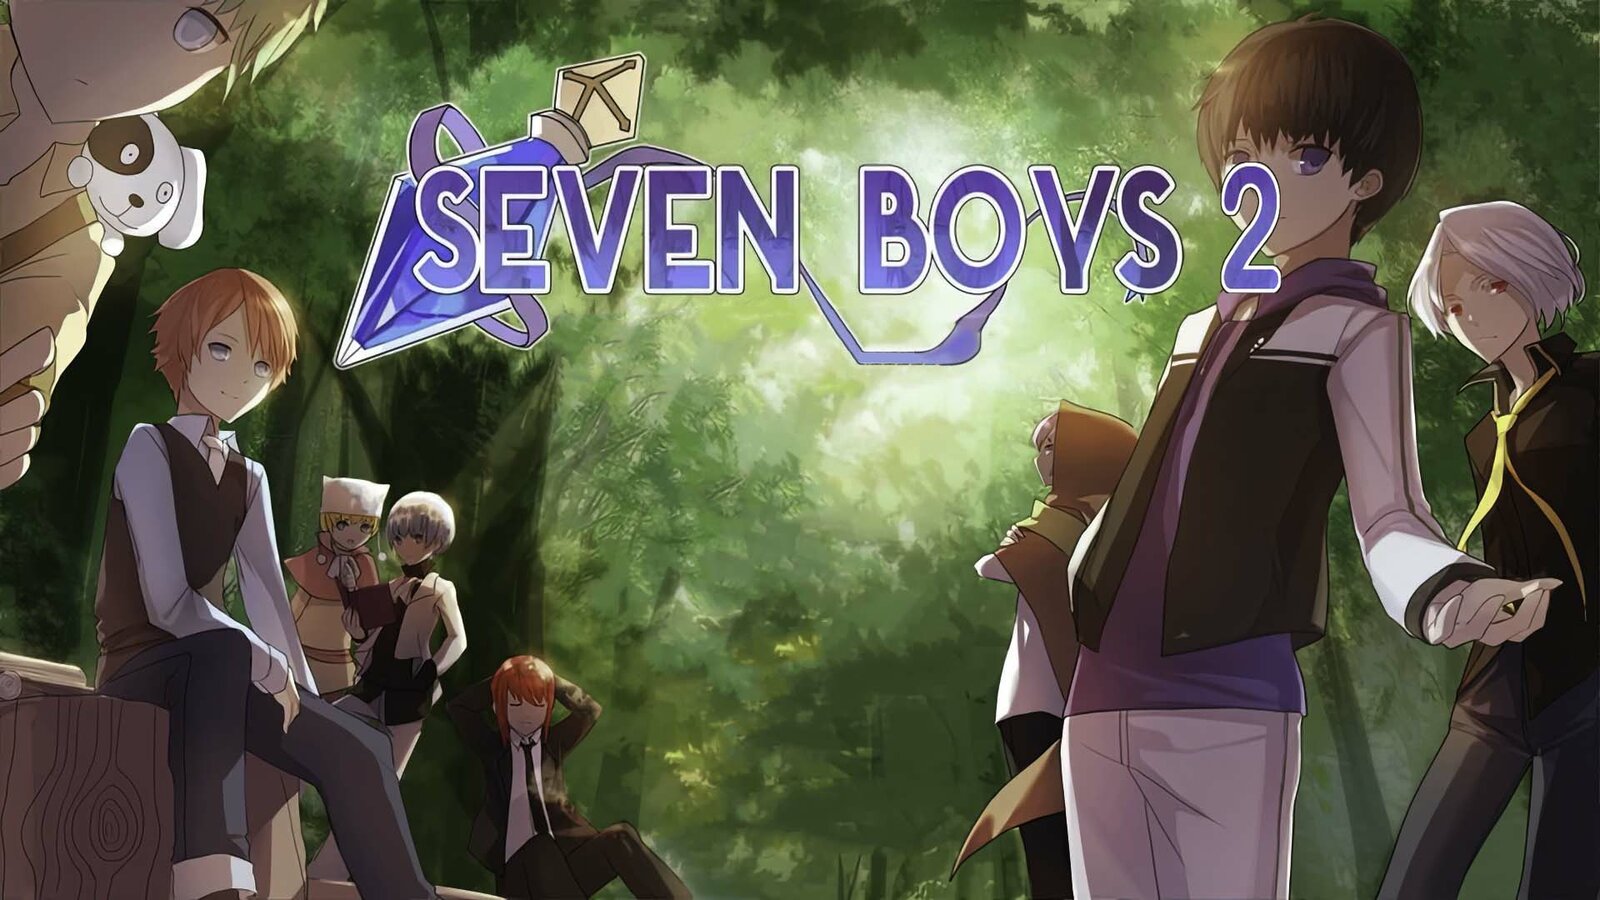 Seven boys 2